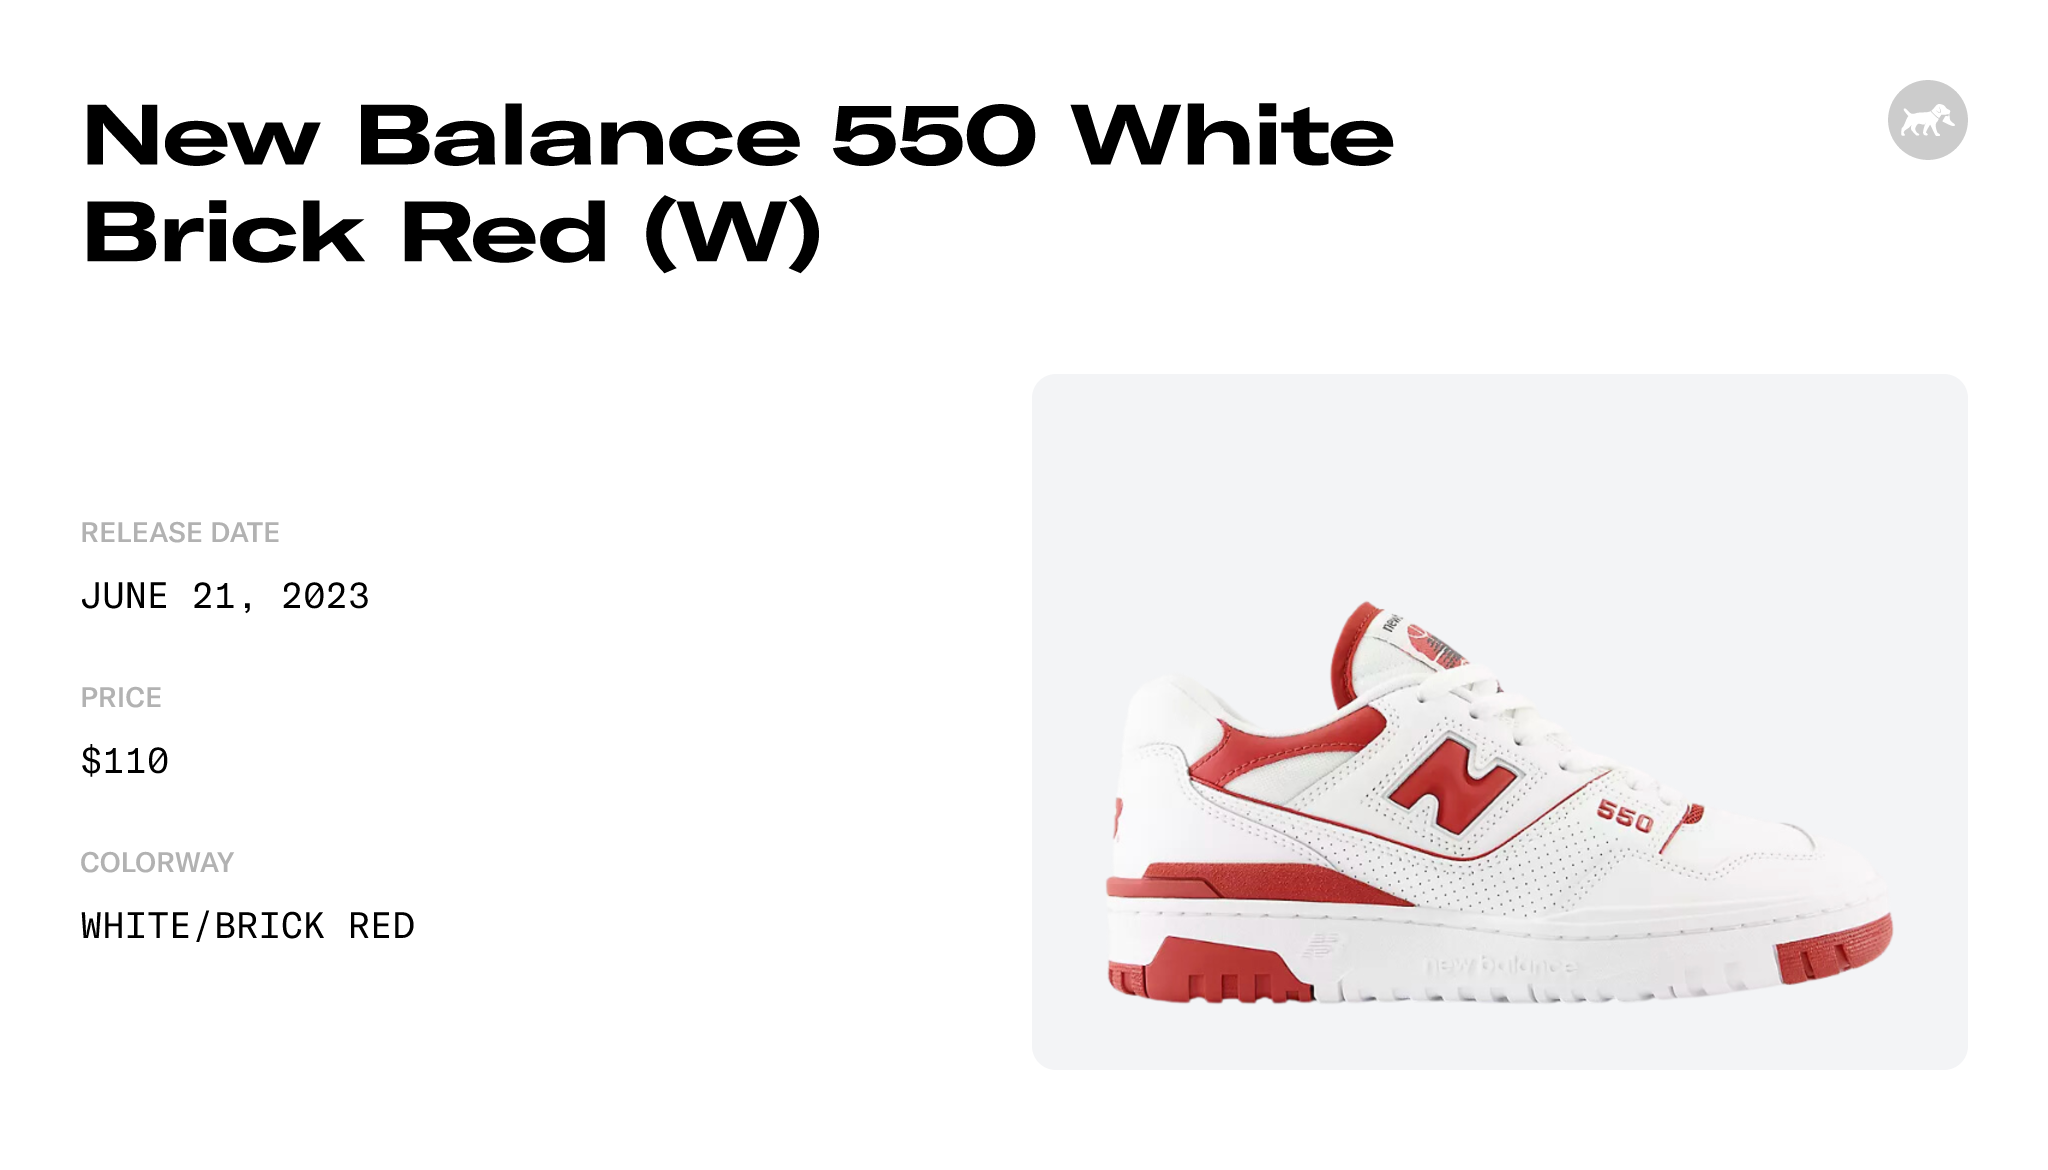 New Balance 550 White/Brick Red Women's Shoe